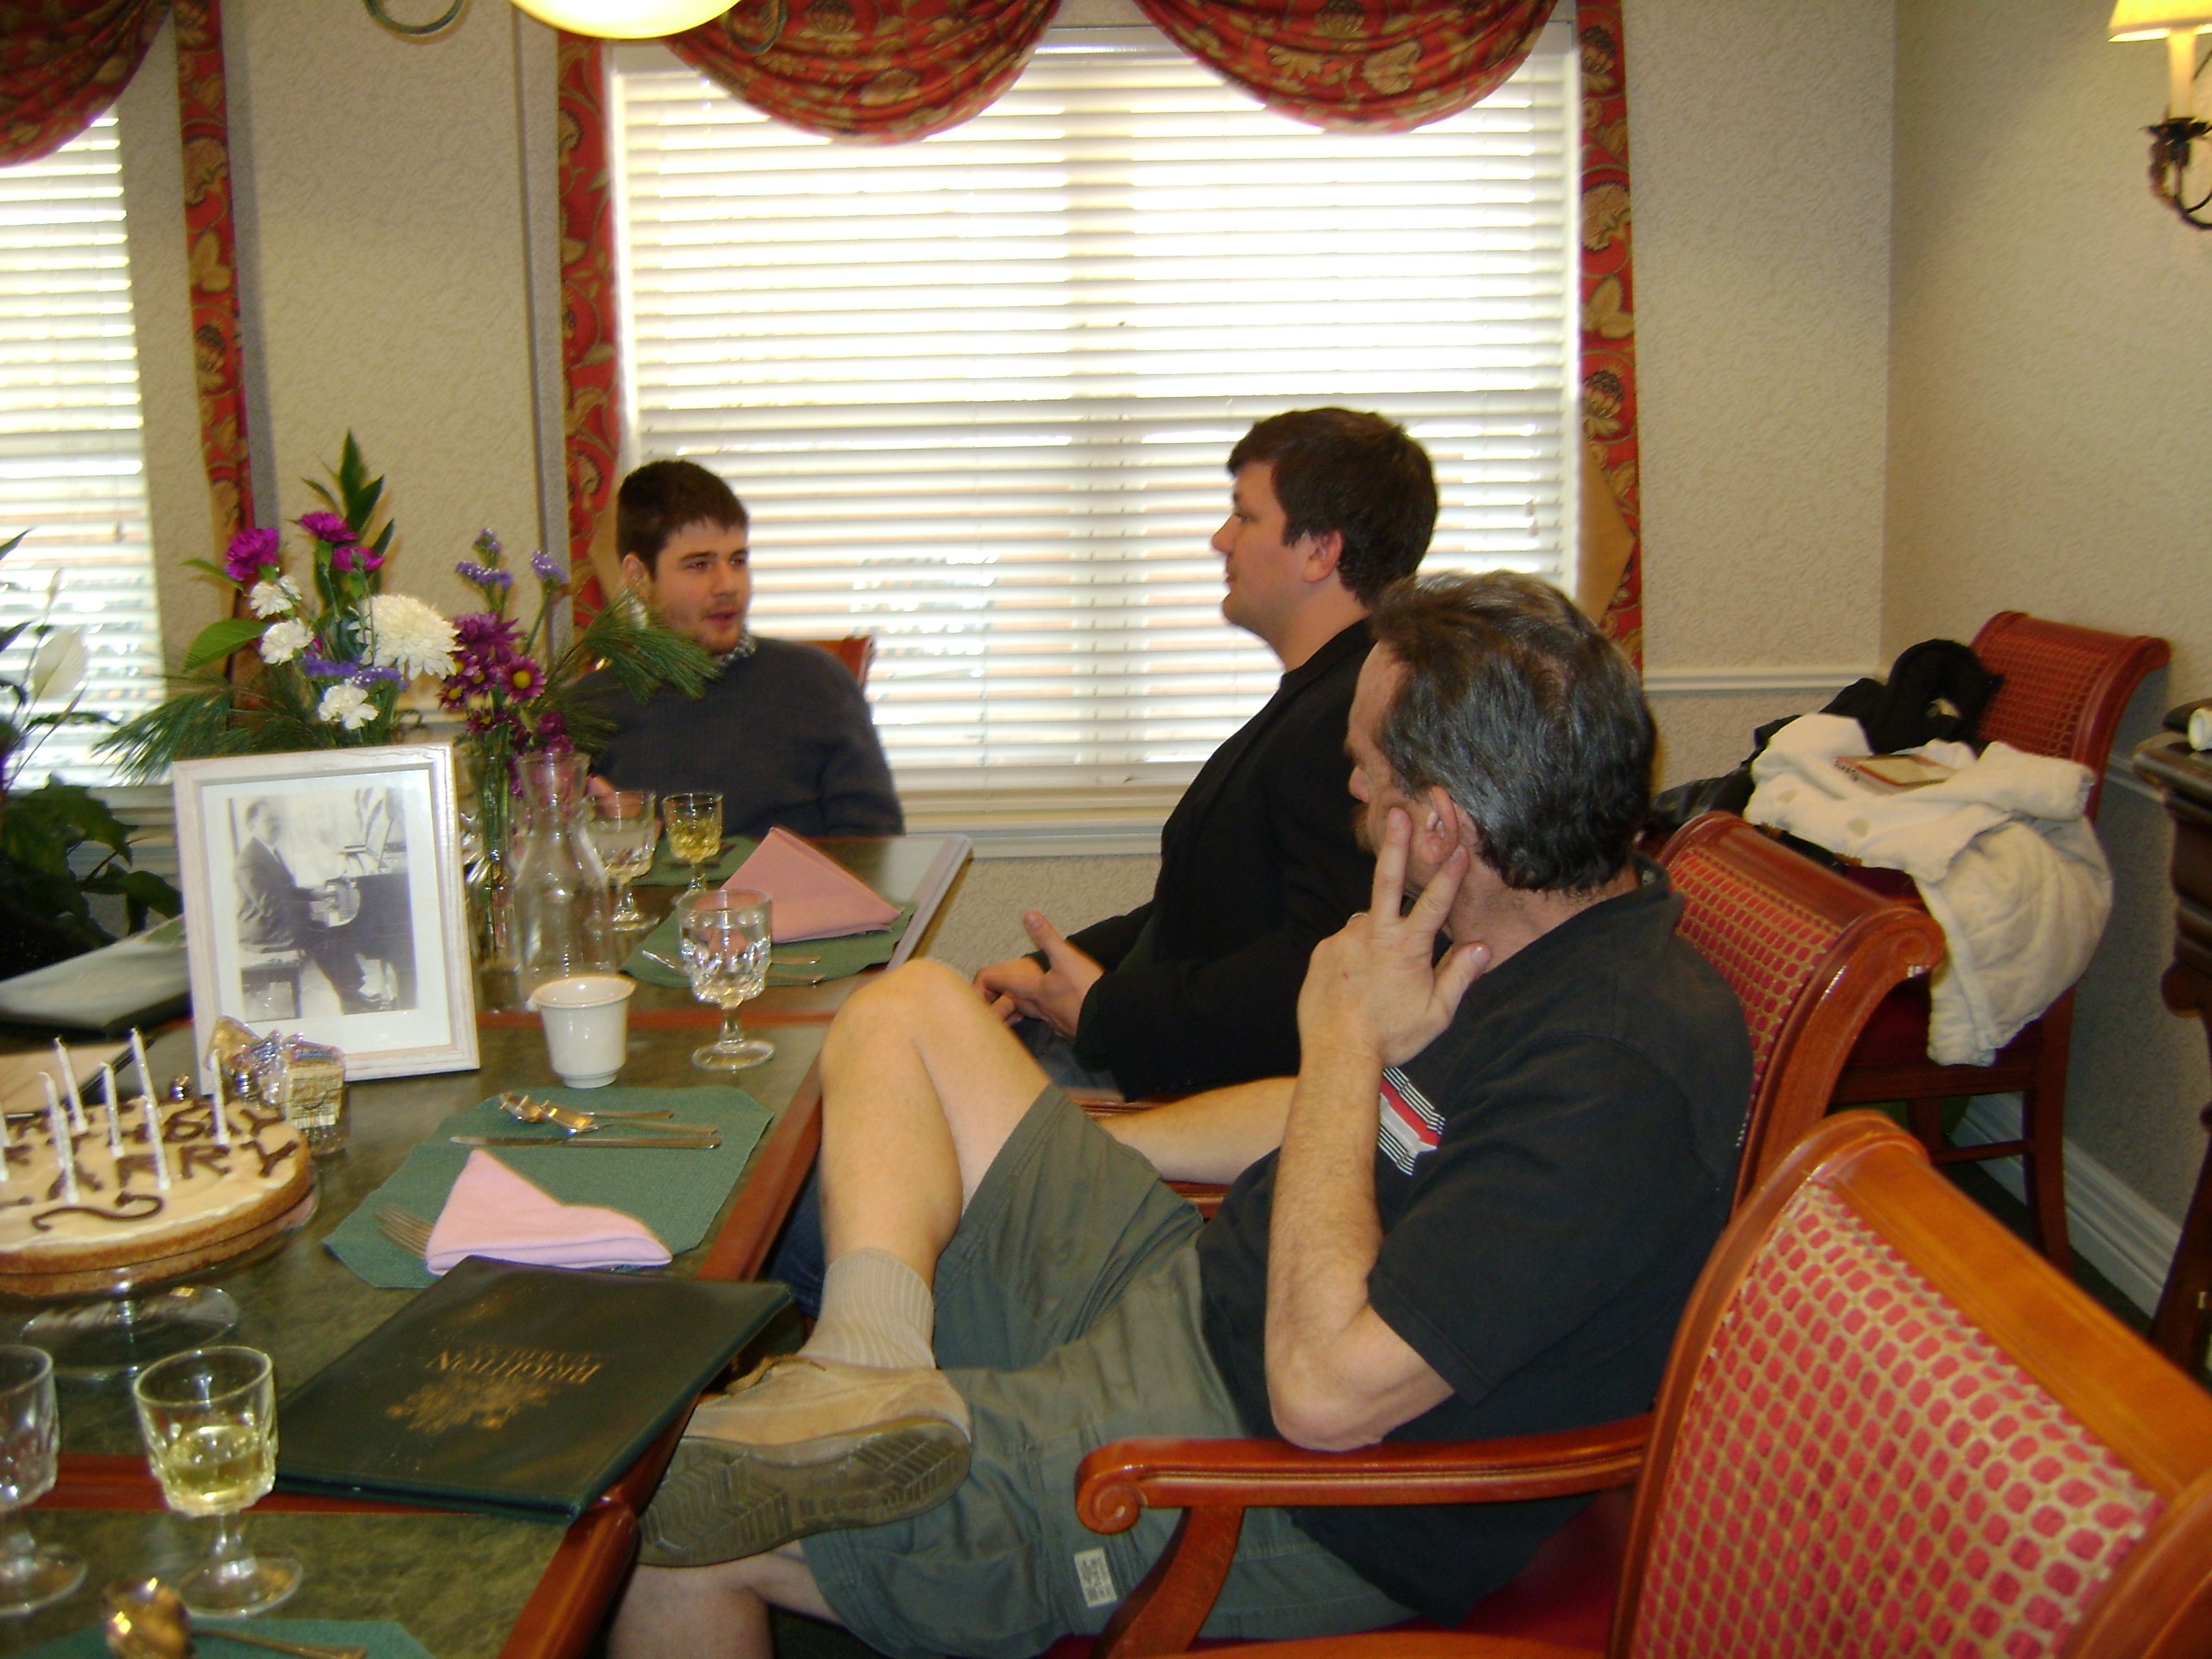 Joe, Paul, and Steve